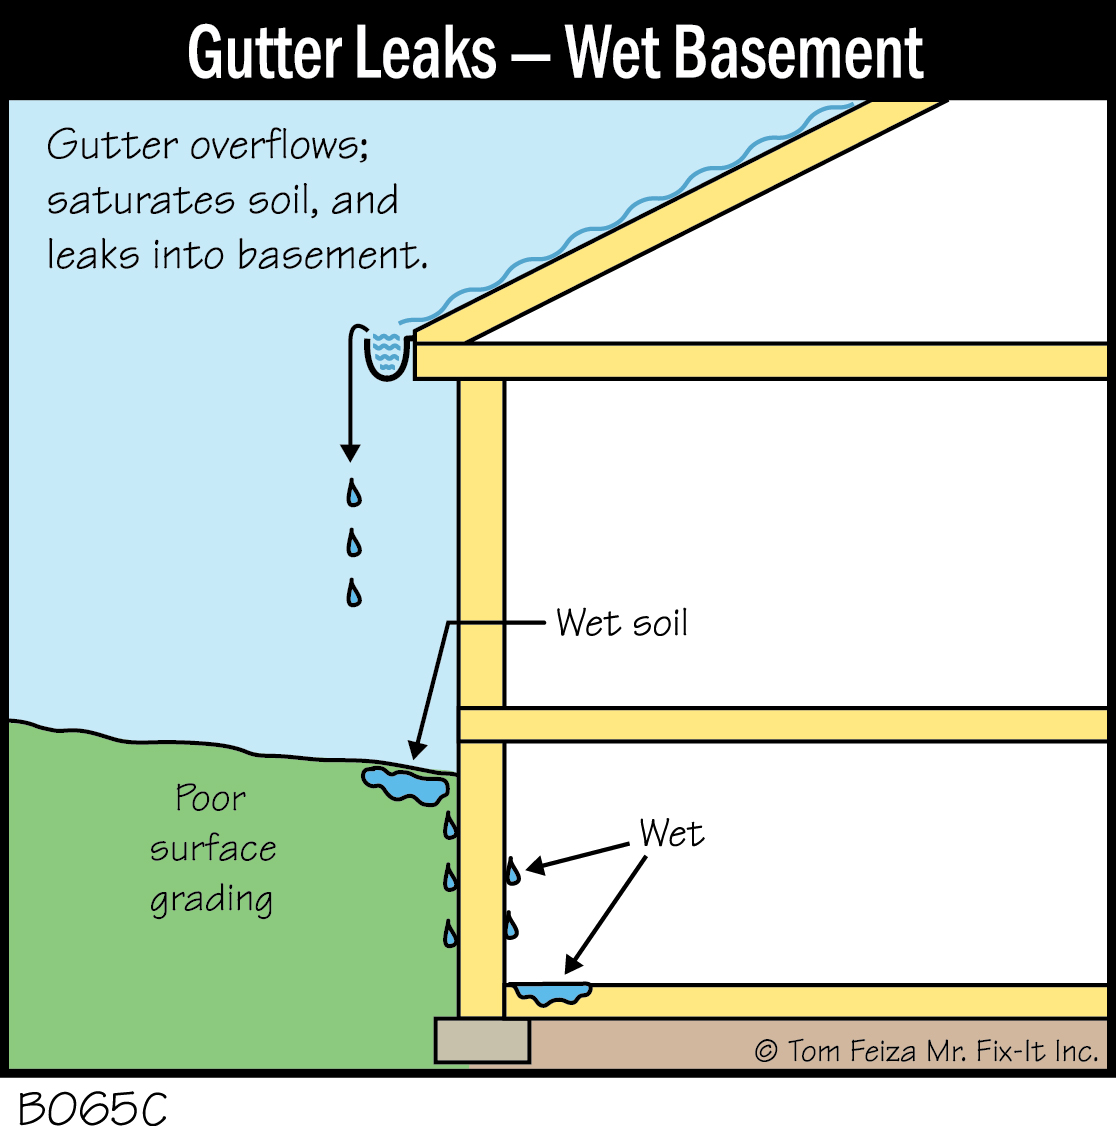 B065C - Gutter Leaks - Wet Basement